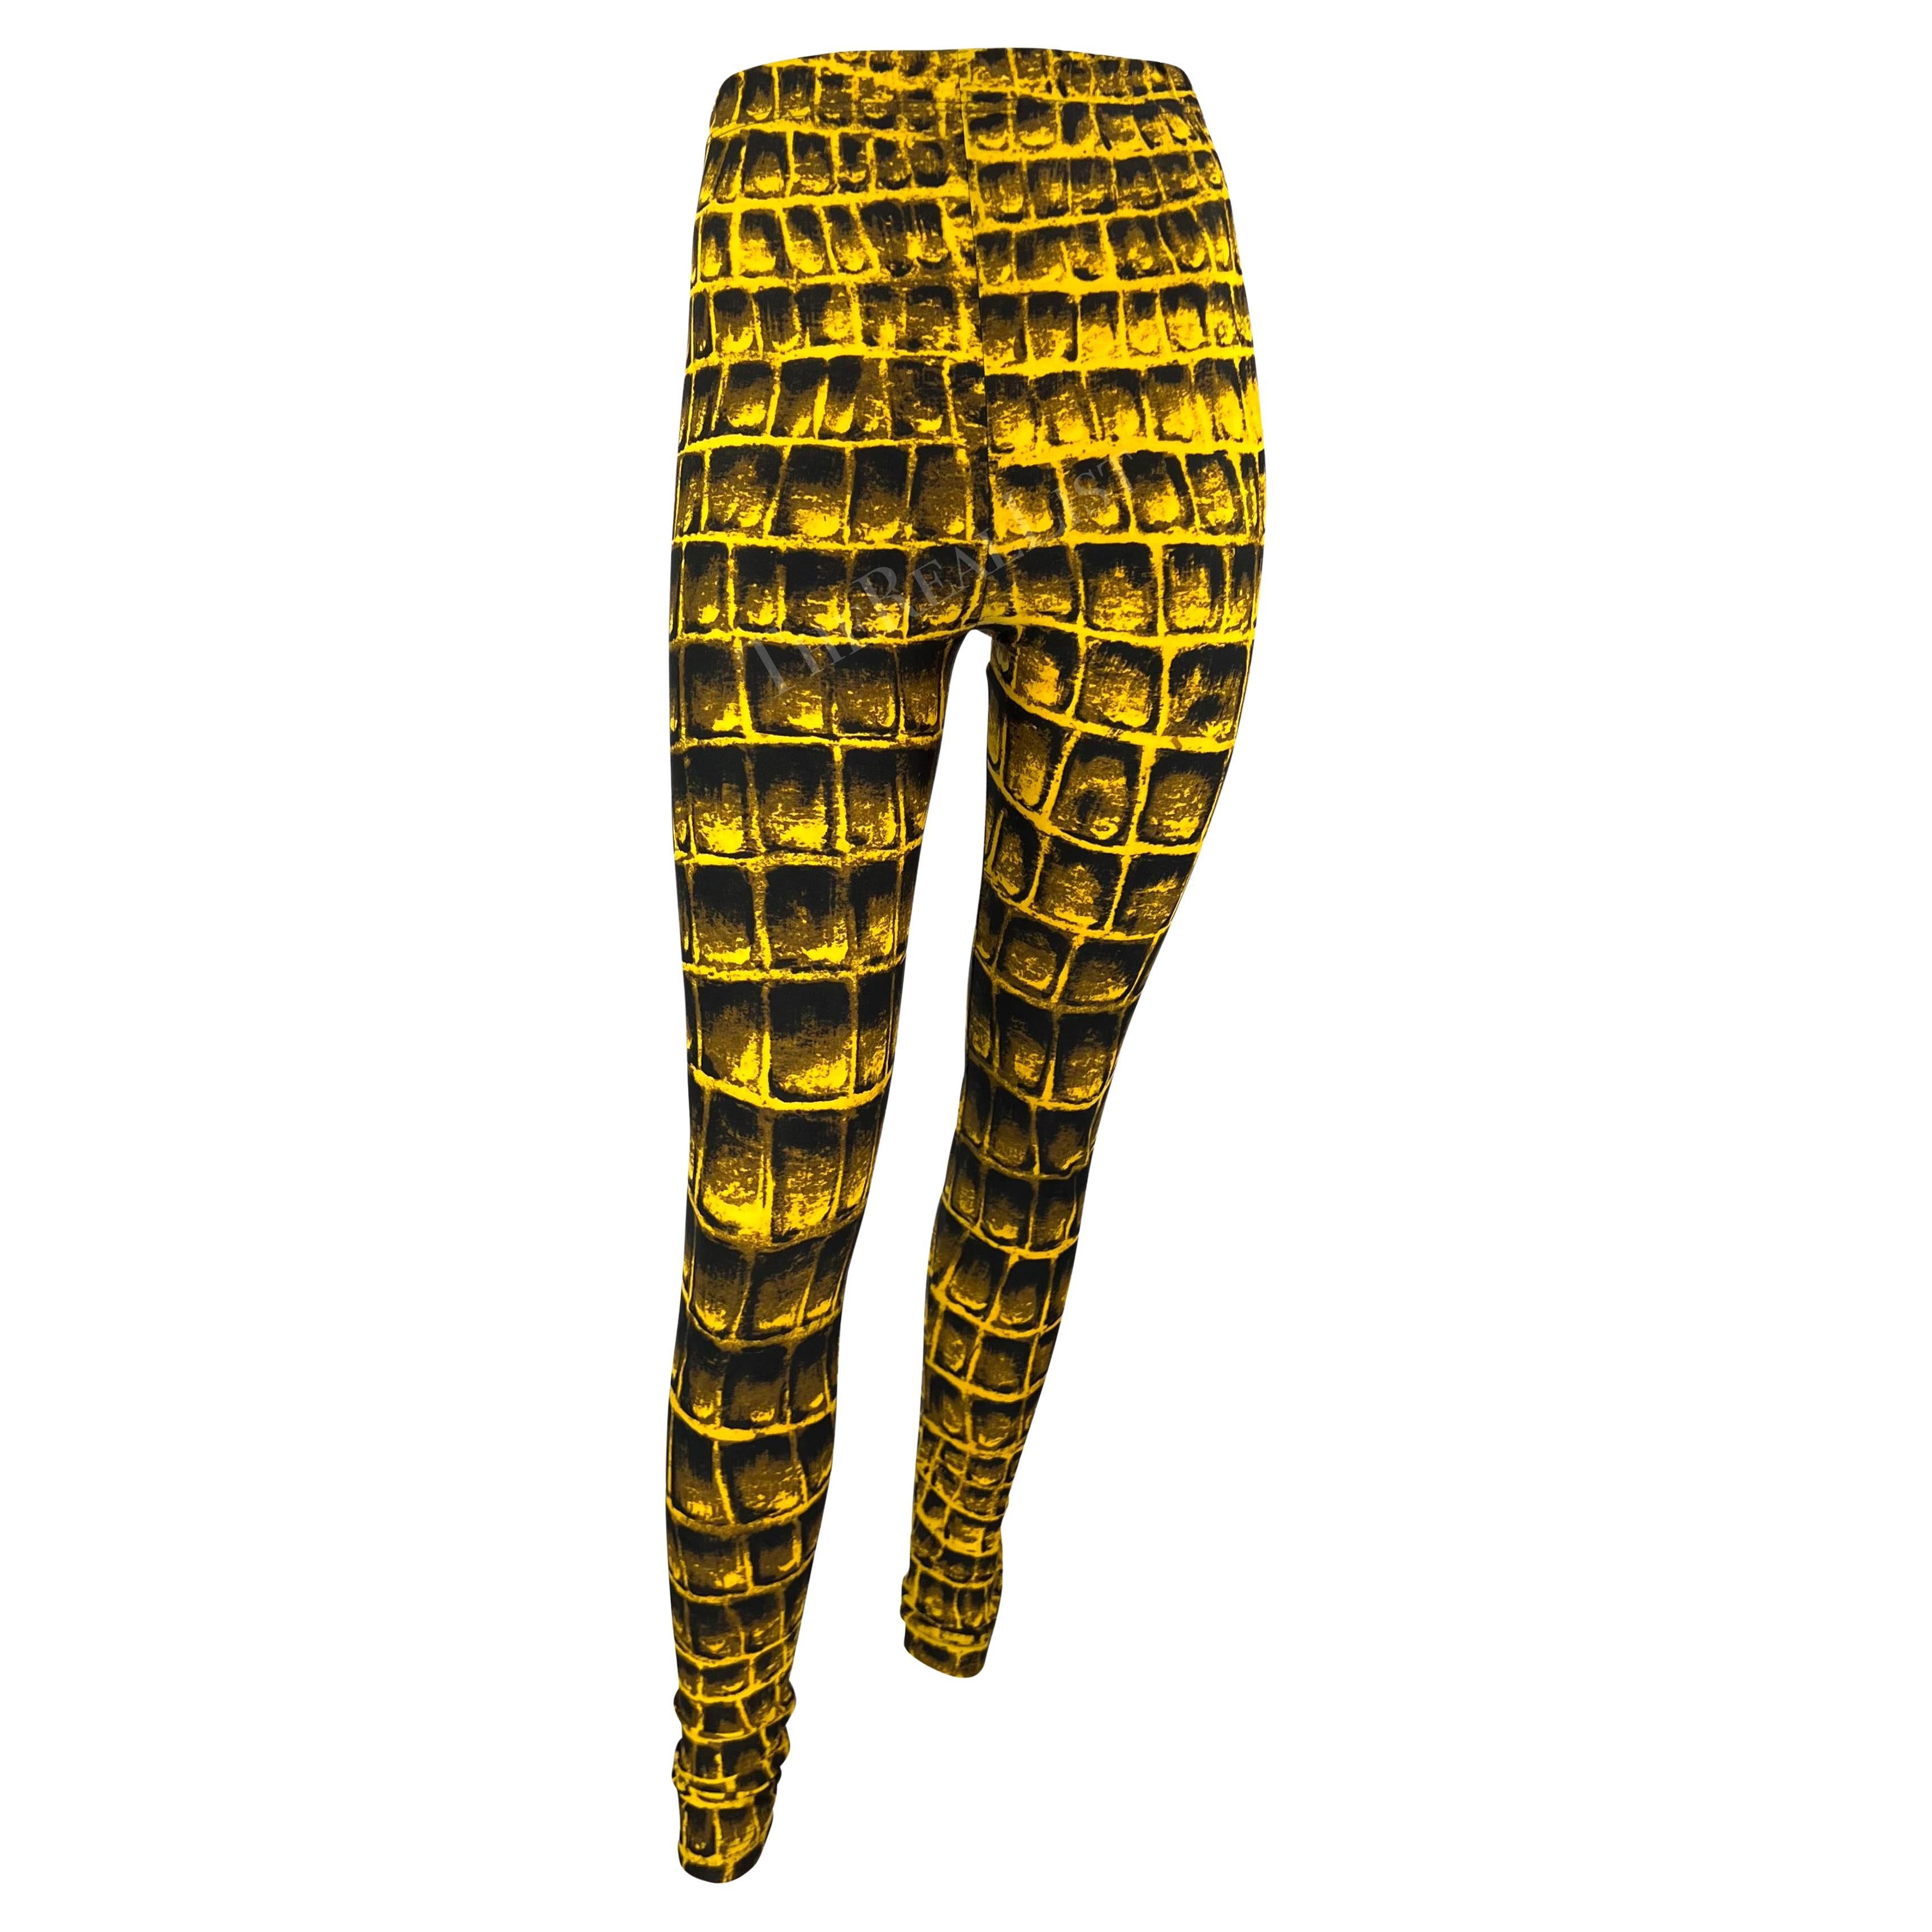 S/S 1992 Gianni Versace Runway Yellow Black Crocodile Print Leggings Tights en vente